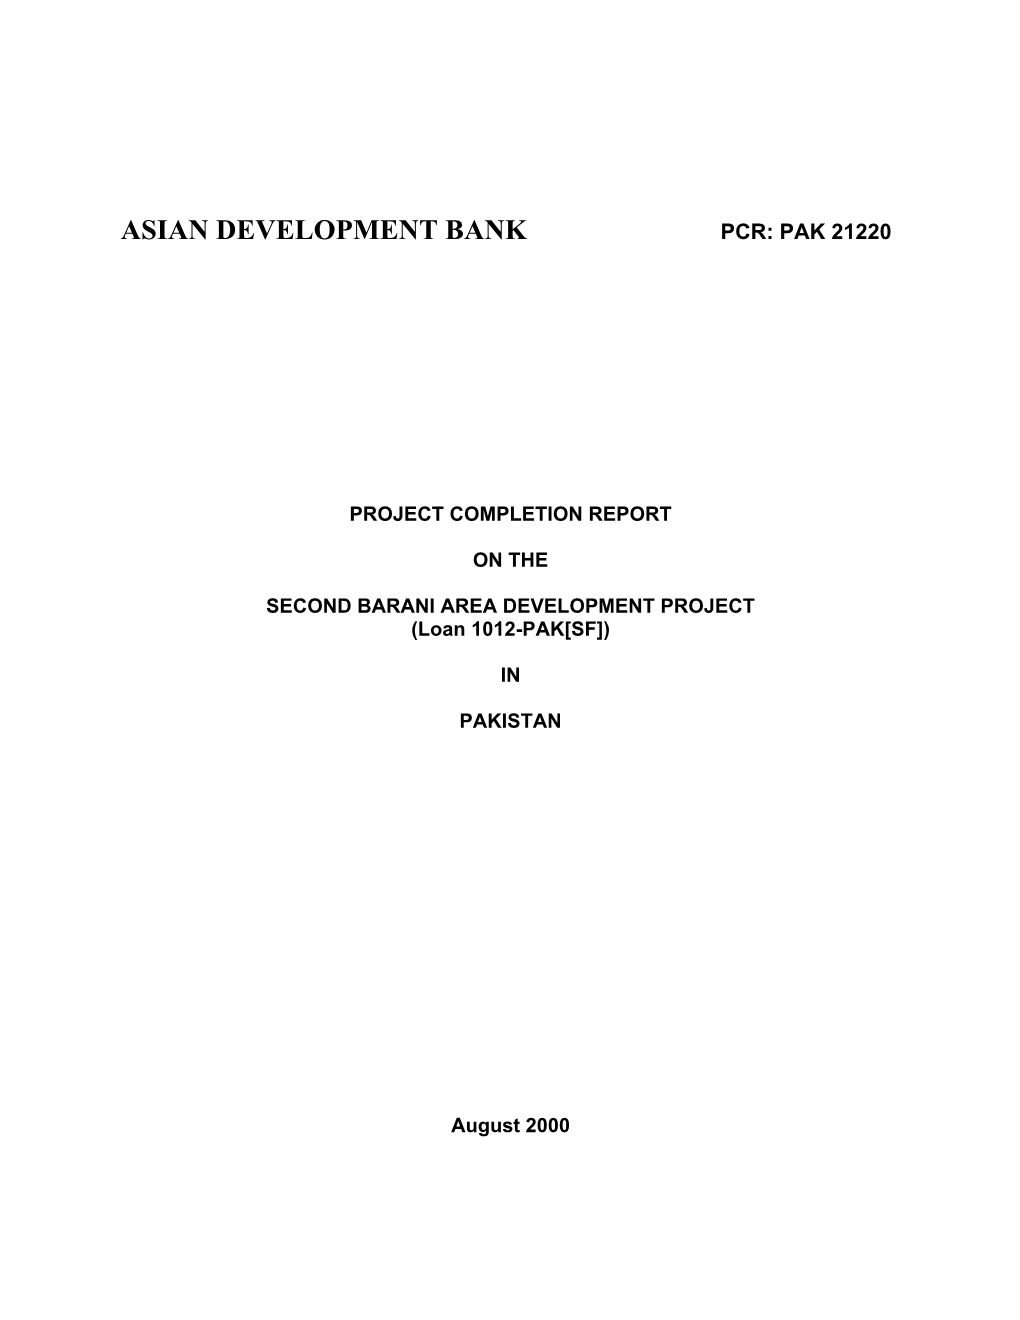 Asian Development Bank Pcr: Pak 21220